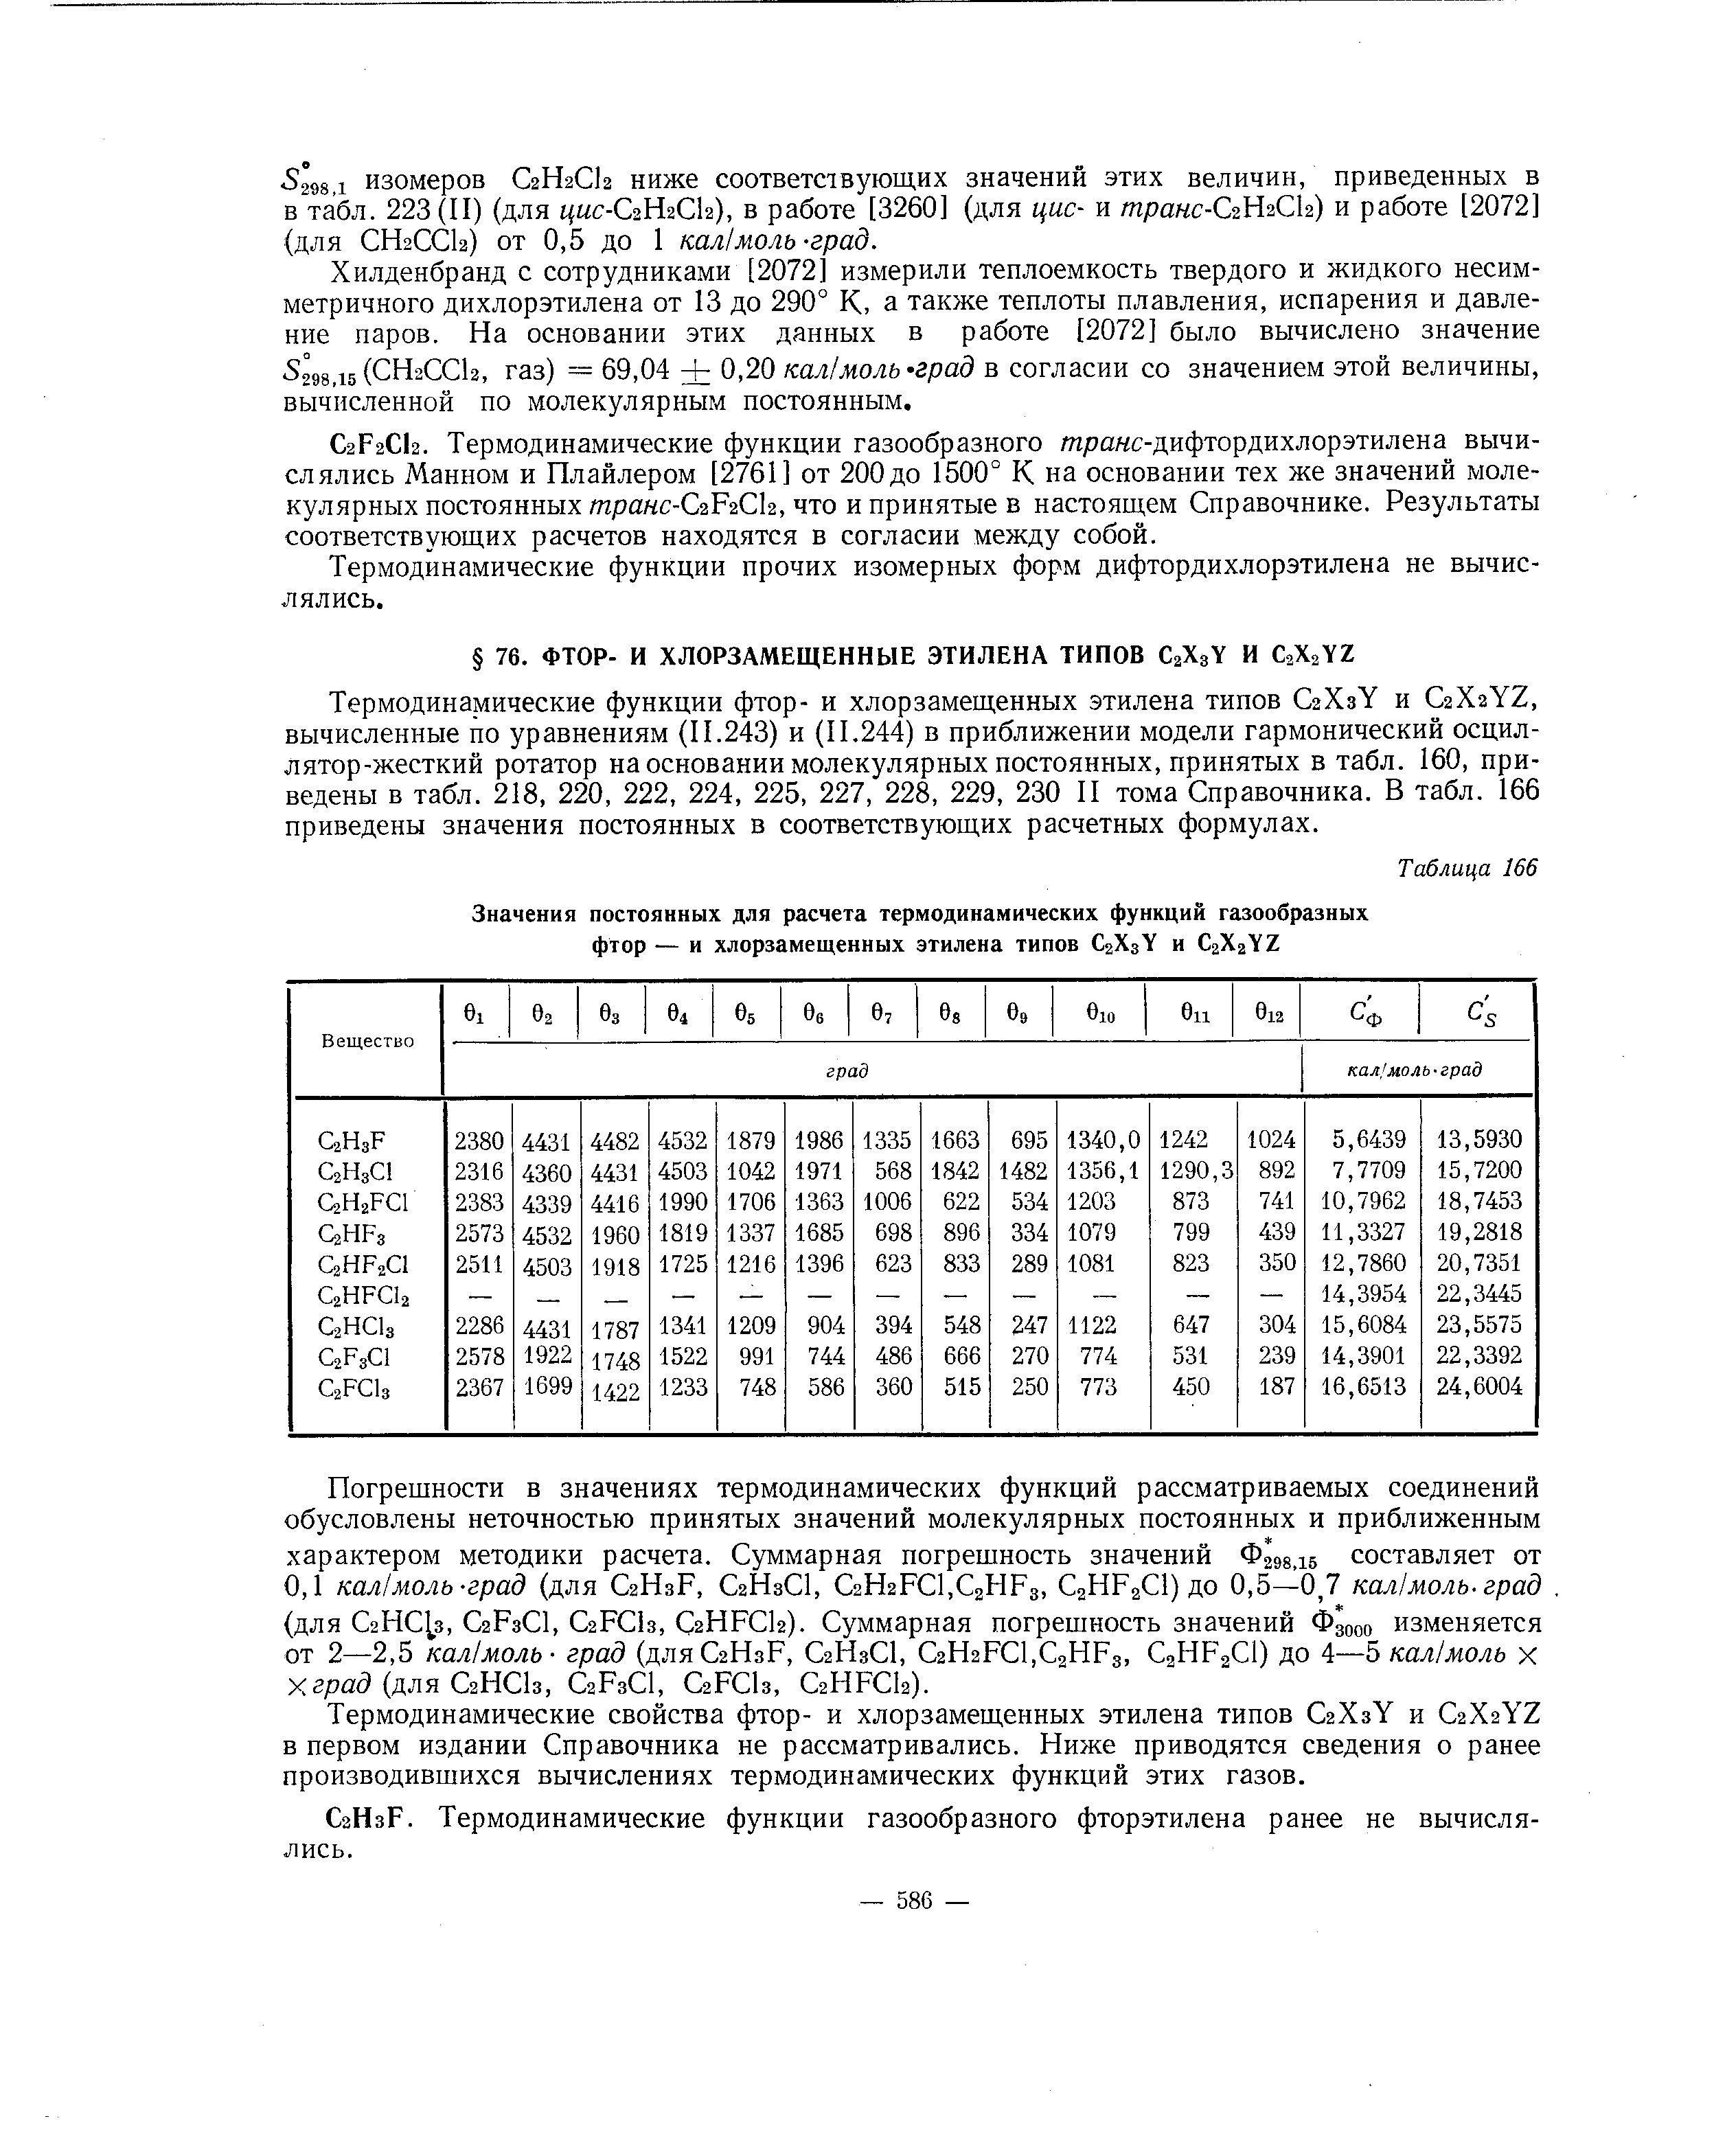 Термодинамические функции фтор- и хлорзамещенных этилена типов СгХзУ и С2Хг 2, вычисленные по уравнениям (11.243) и (11.244) в приближении модели гармонический осцил-лятор-жесткий ротатор на основании молекулярных постоянных, принятых в табл. 160, приведены в табл. 218, 220, 222, 224, 225, 227, 228, 229, 230 II тома Справочника. В табл. 166 приведены значения постоянных в соответствующих расчетных формулах.